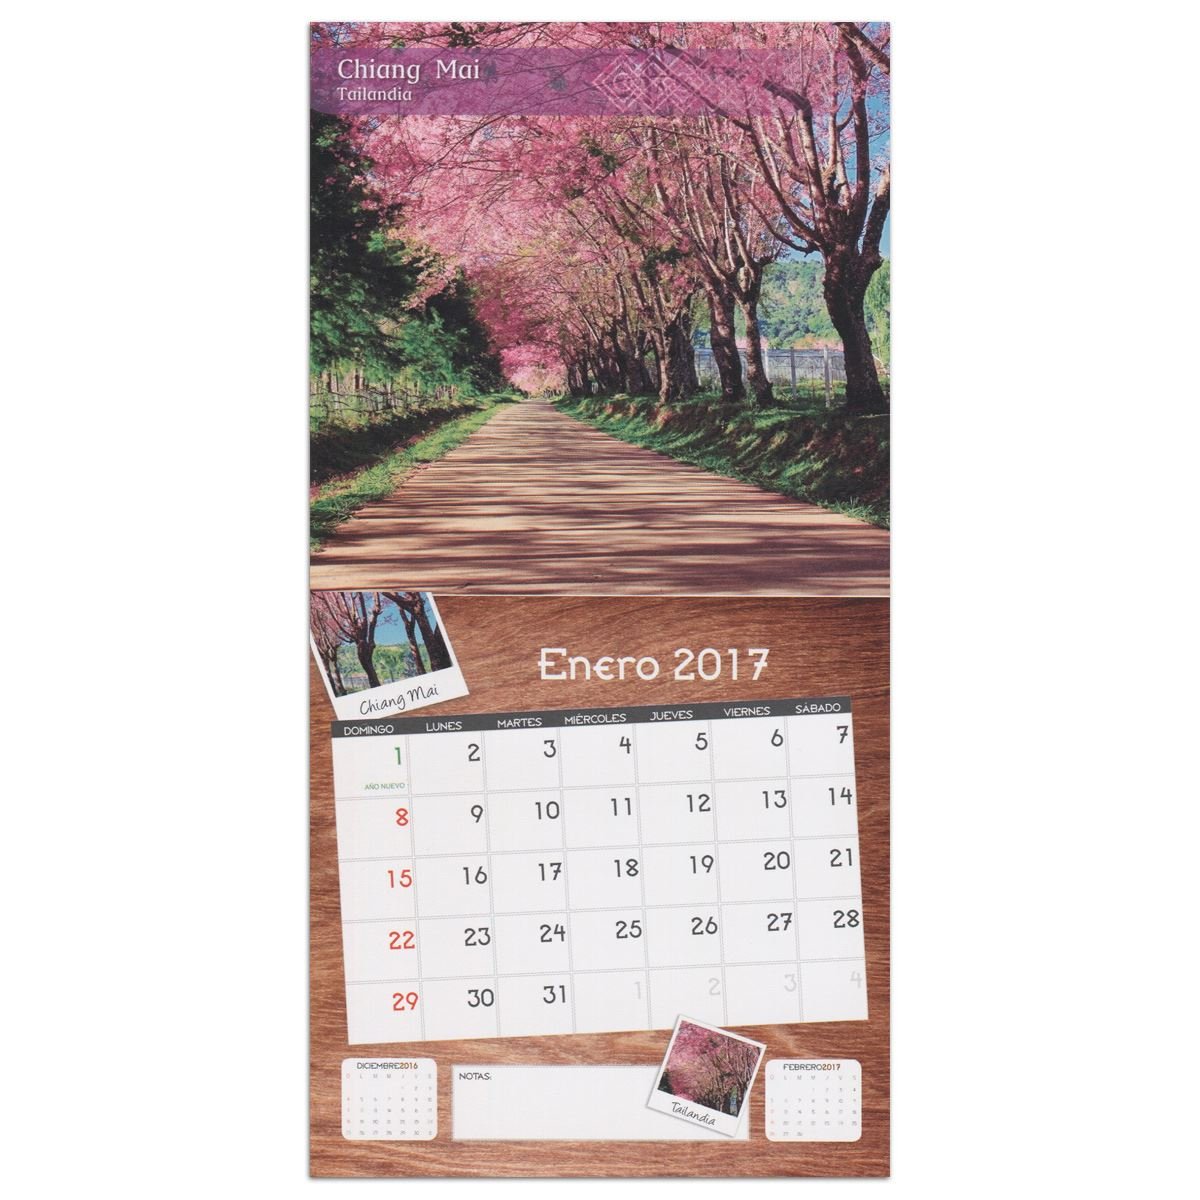 Calendario 2017 Paisajes